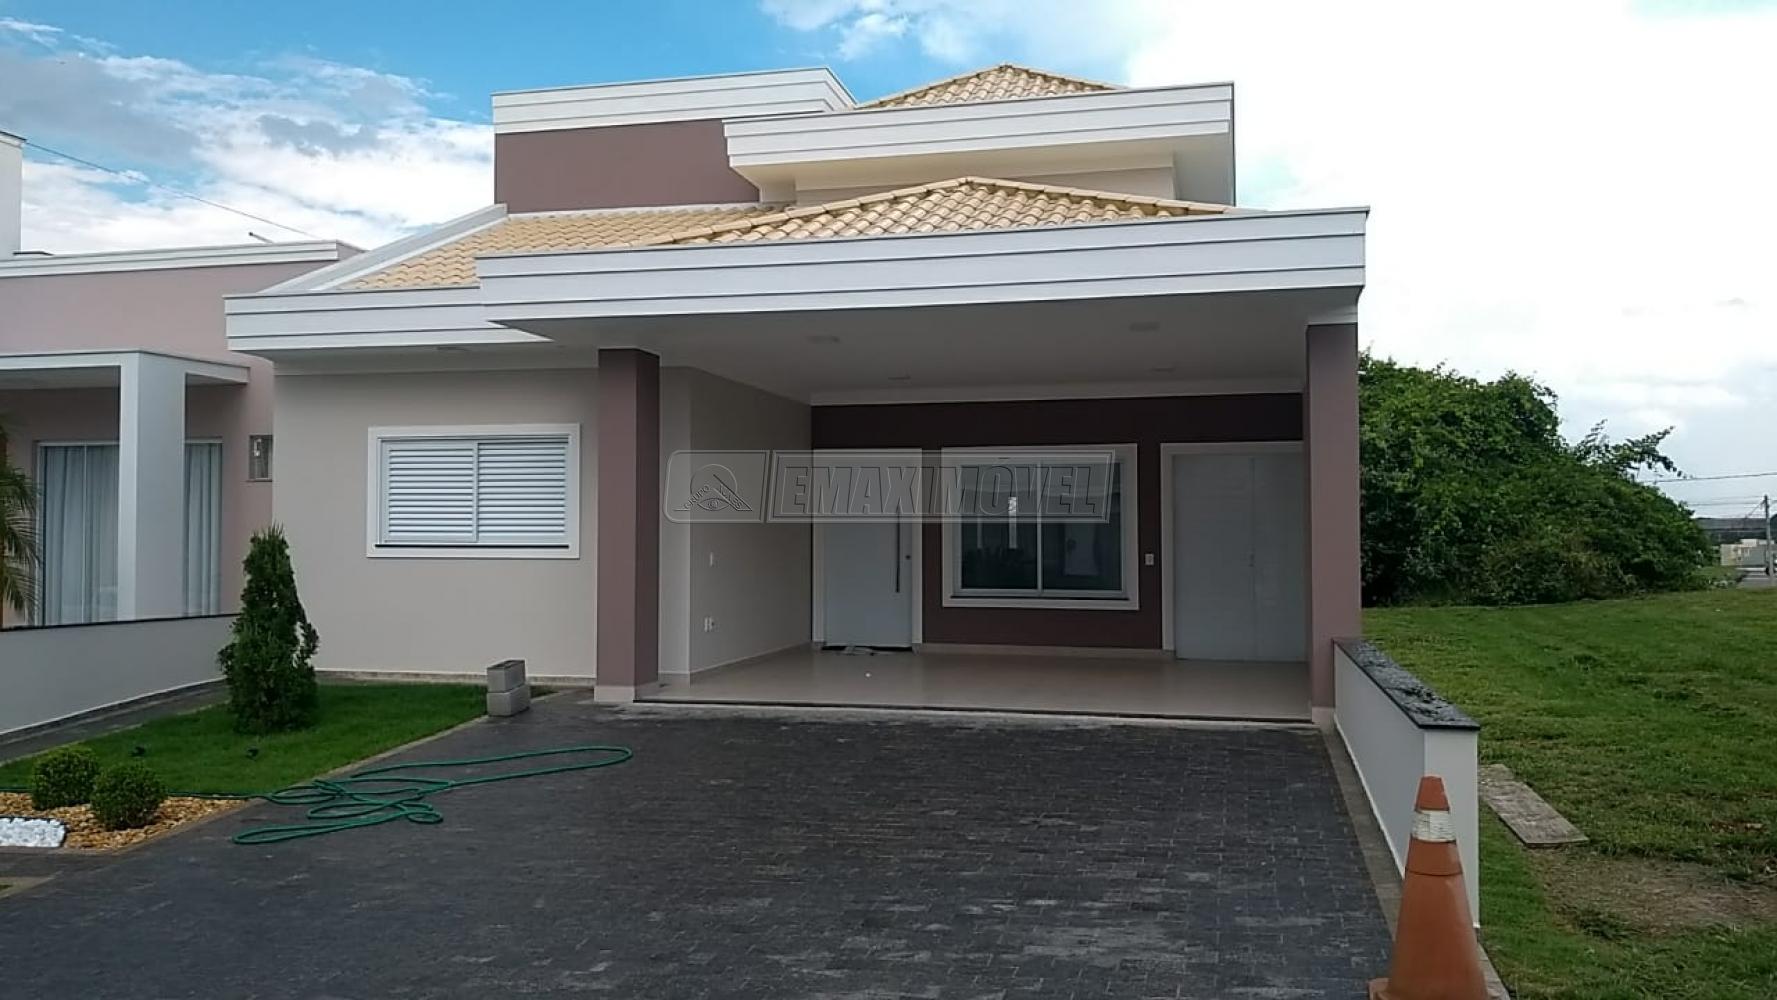 Comprar Casa / em Condomínios em Sorocaba R$ 850.000,00 - Foto 2